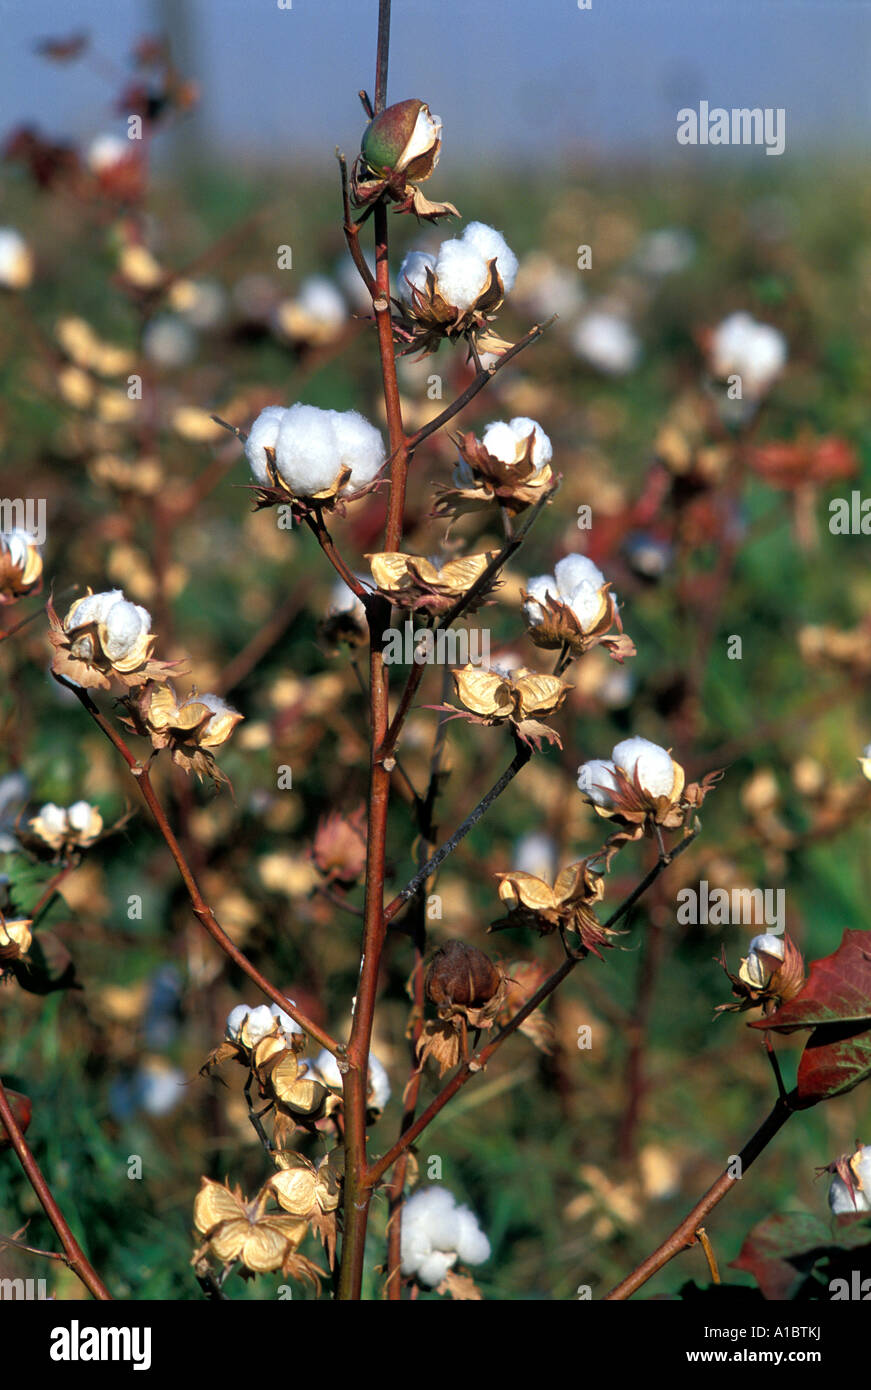 Mature cotton plants Adana Turkey Stock Photo